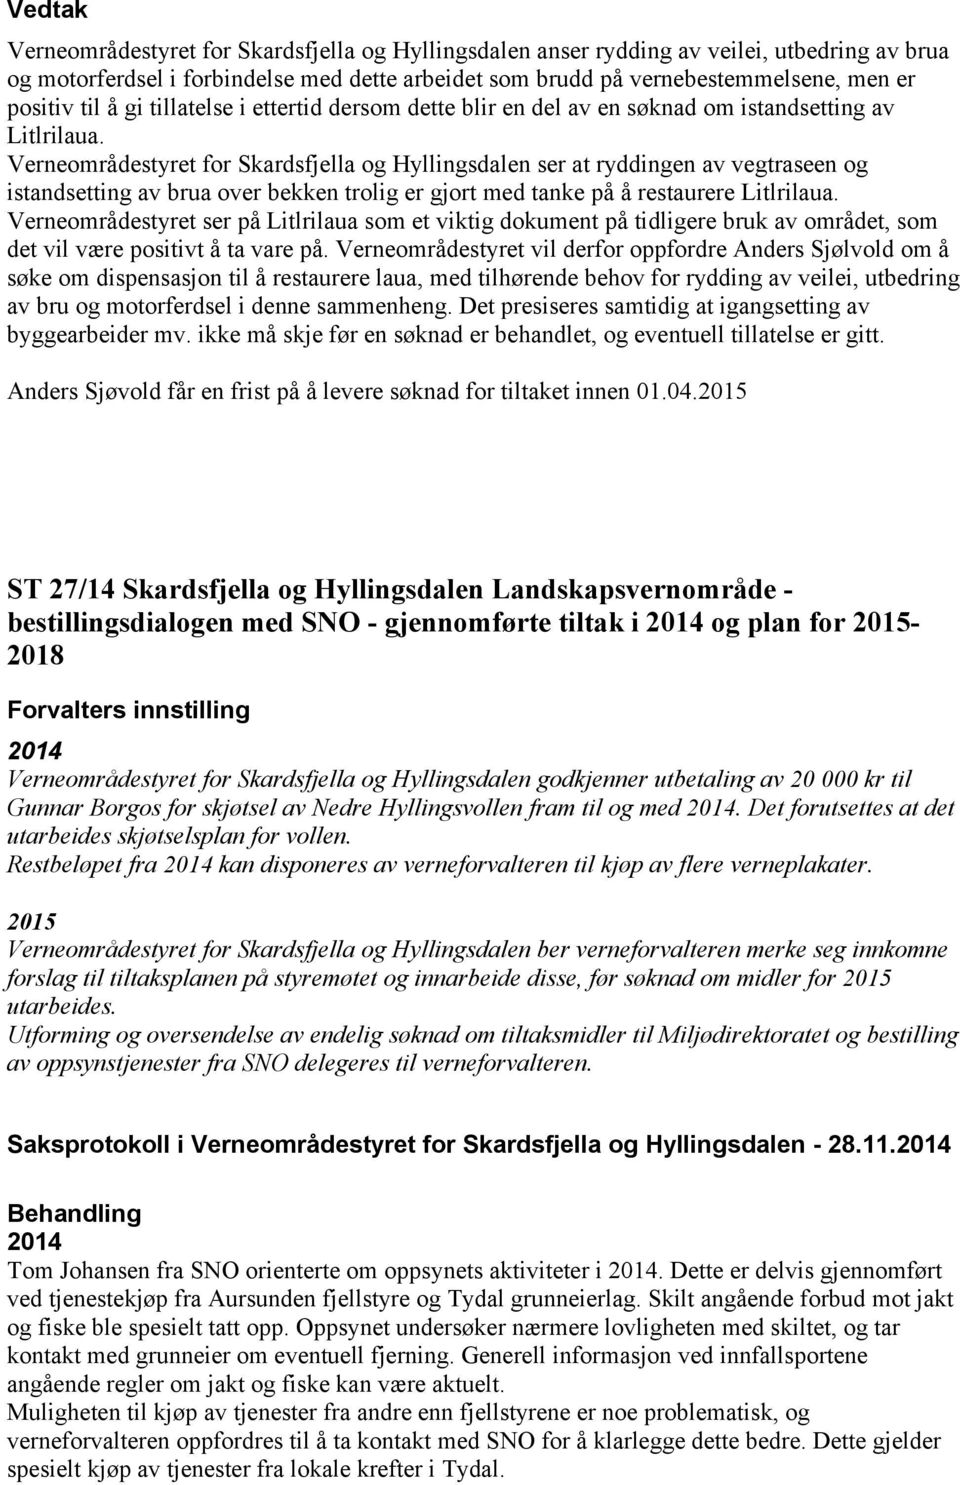 Verneområdestyret for Skardsfjella og Hyllingsdalen ser at ryddingen av vegtraseen og istandsetting av brua over bekken trolig er gjort med tanke på å restaurere Litlrilaua.